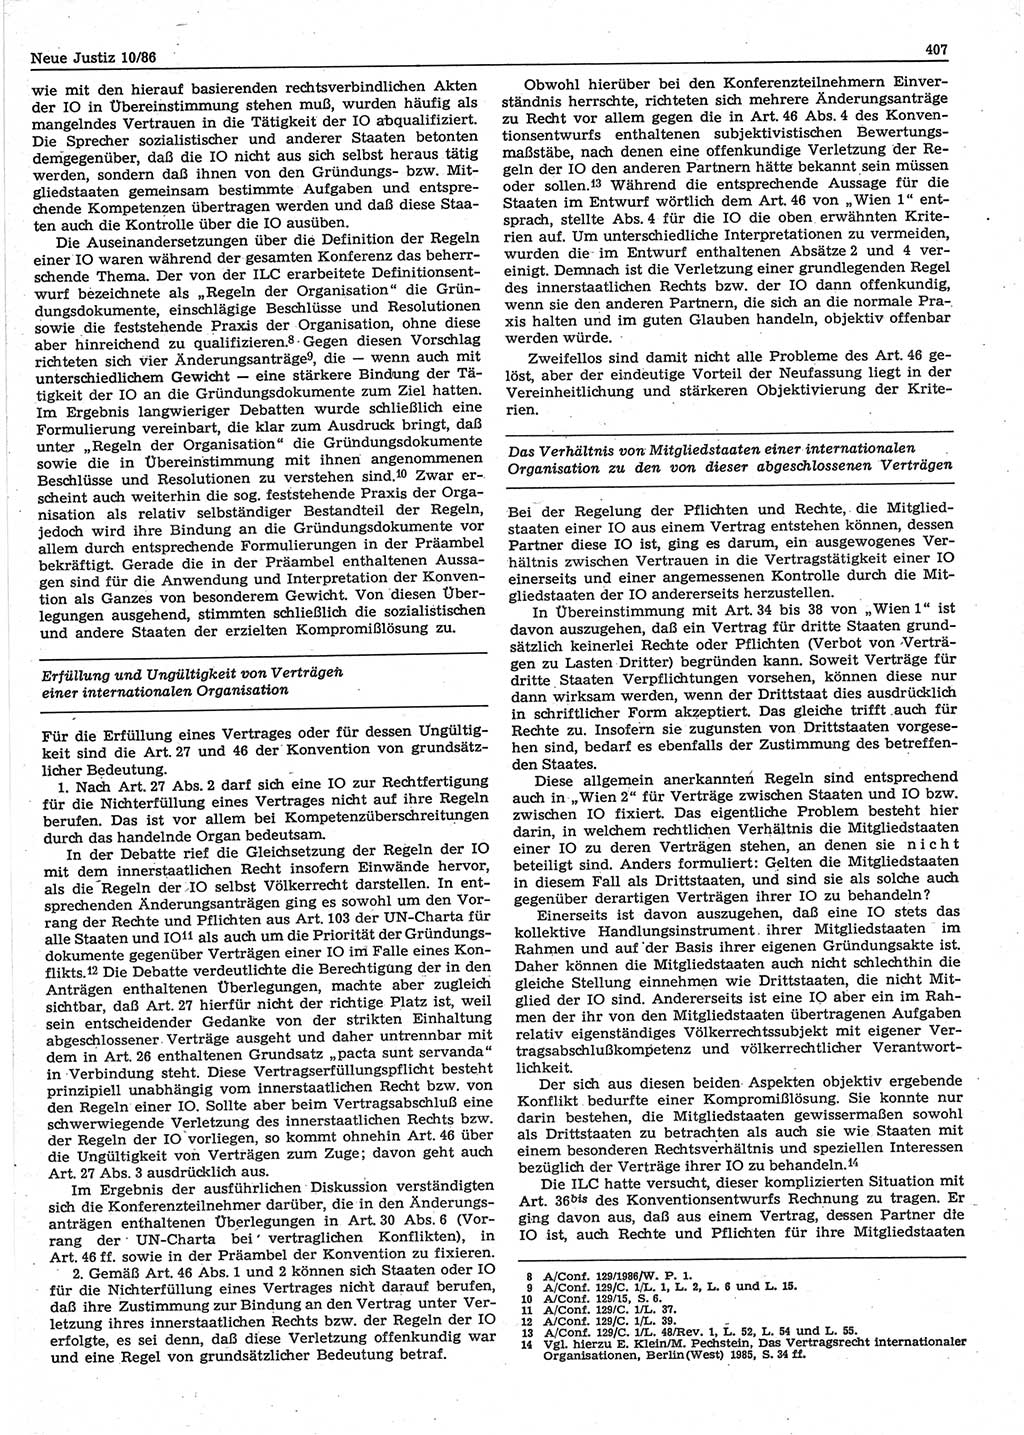 Neue Justiz (NJ), Zeitschrift für sozialistisches Recht und Gesetzlichkeit [Deutsche Demokratische Republik (DDR)], 40. Jahrgang 1986, Seite 407 (NJ DDR 1986, S. 407)